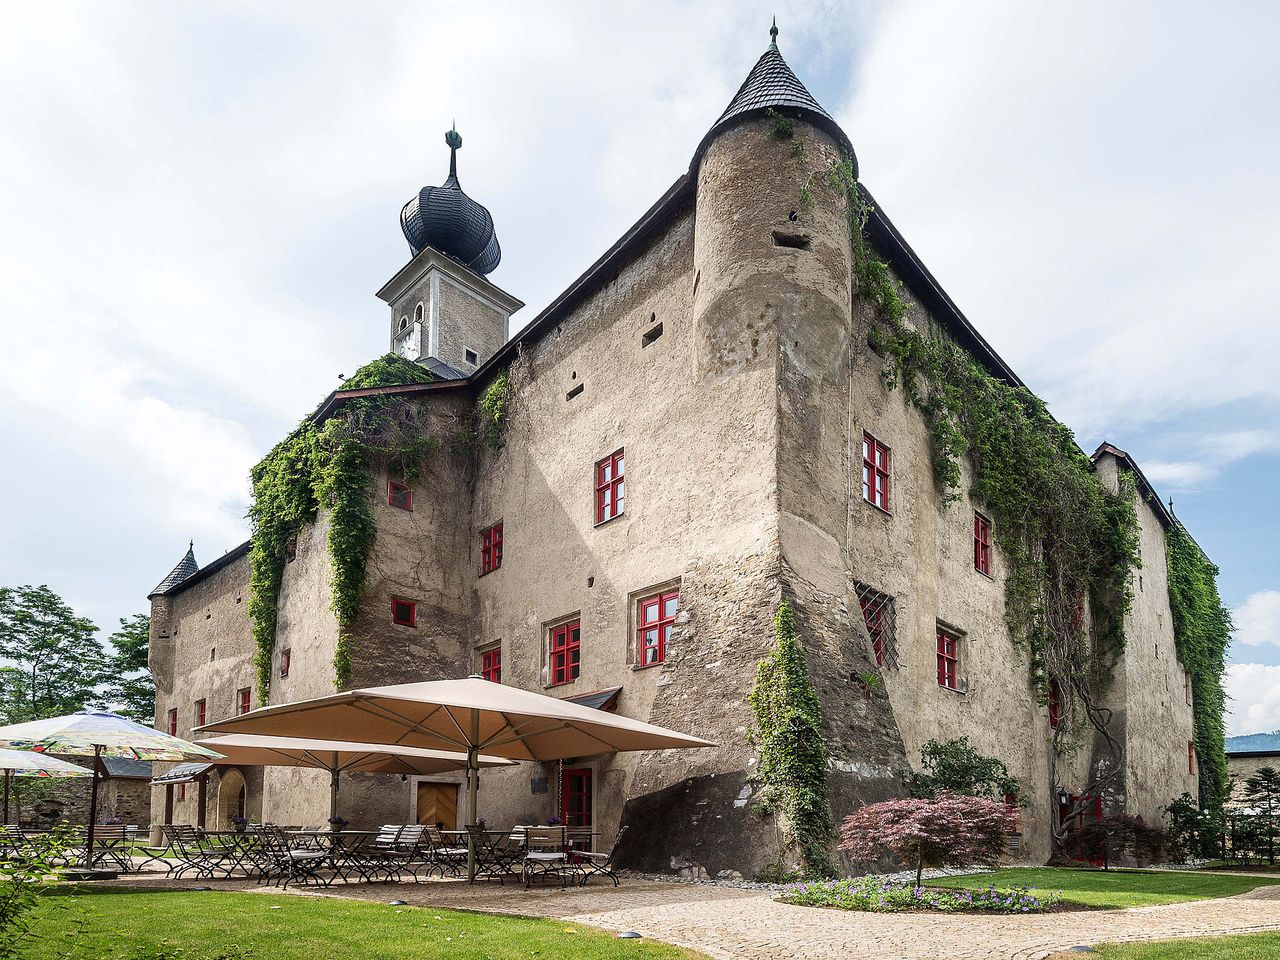 6 Tage Steiermark: Romantisches Schloss mit Therme